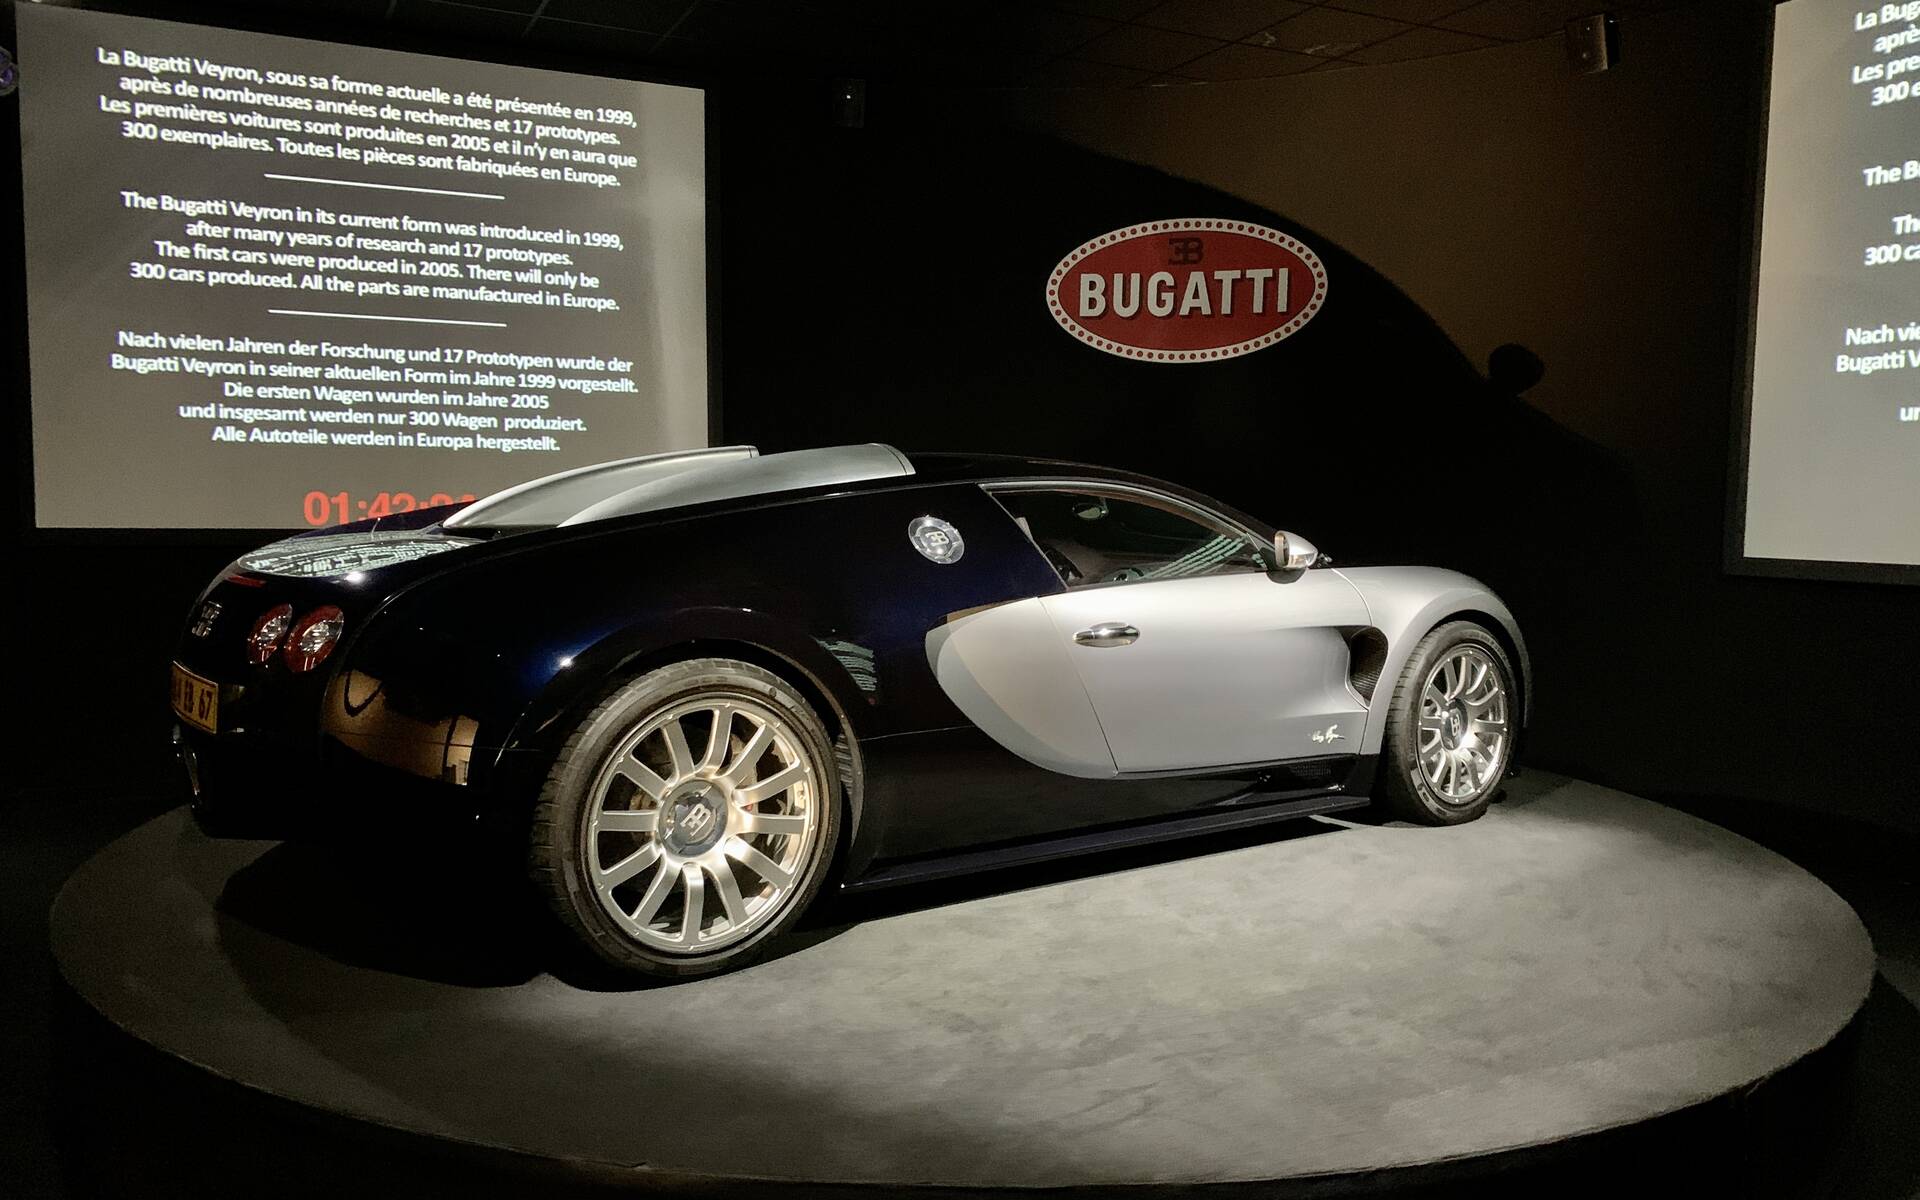 En photos : une centaine de Bugatti réunies dans un même musée 503073-en-photos-des-dizaines-de-bugatti-reunies-dans-un-meme-musee